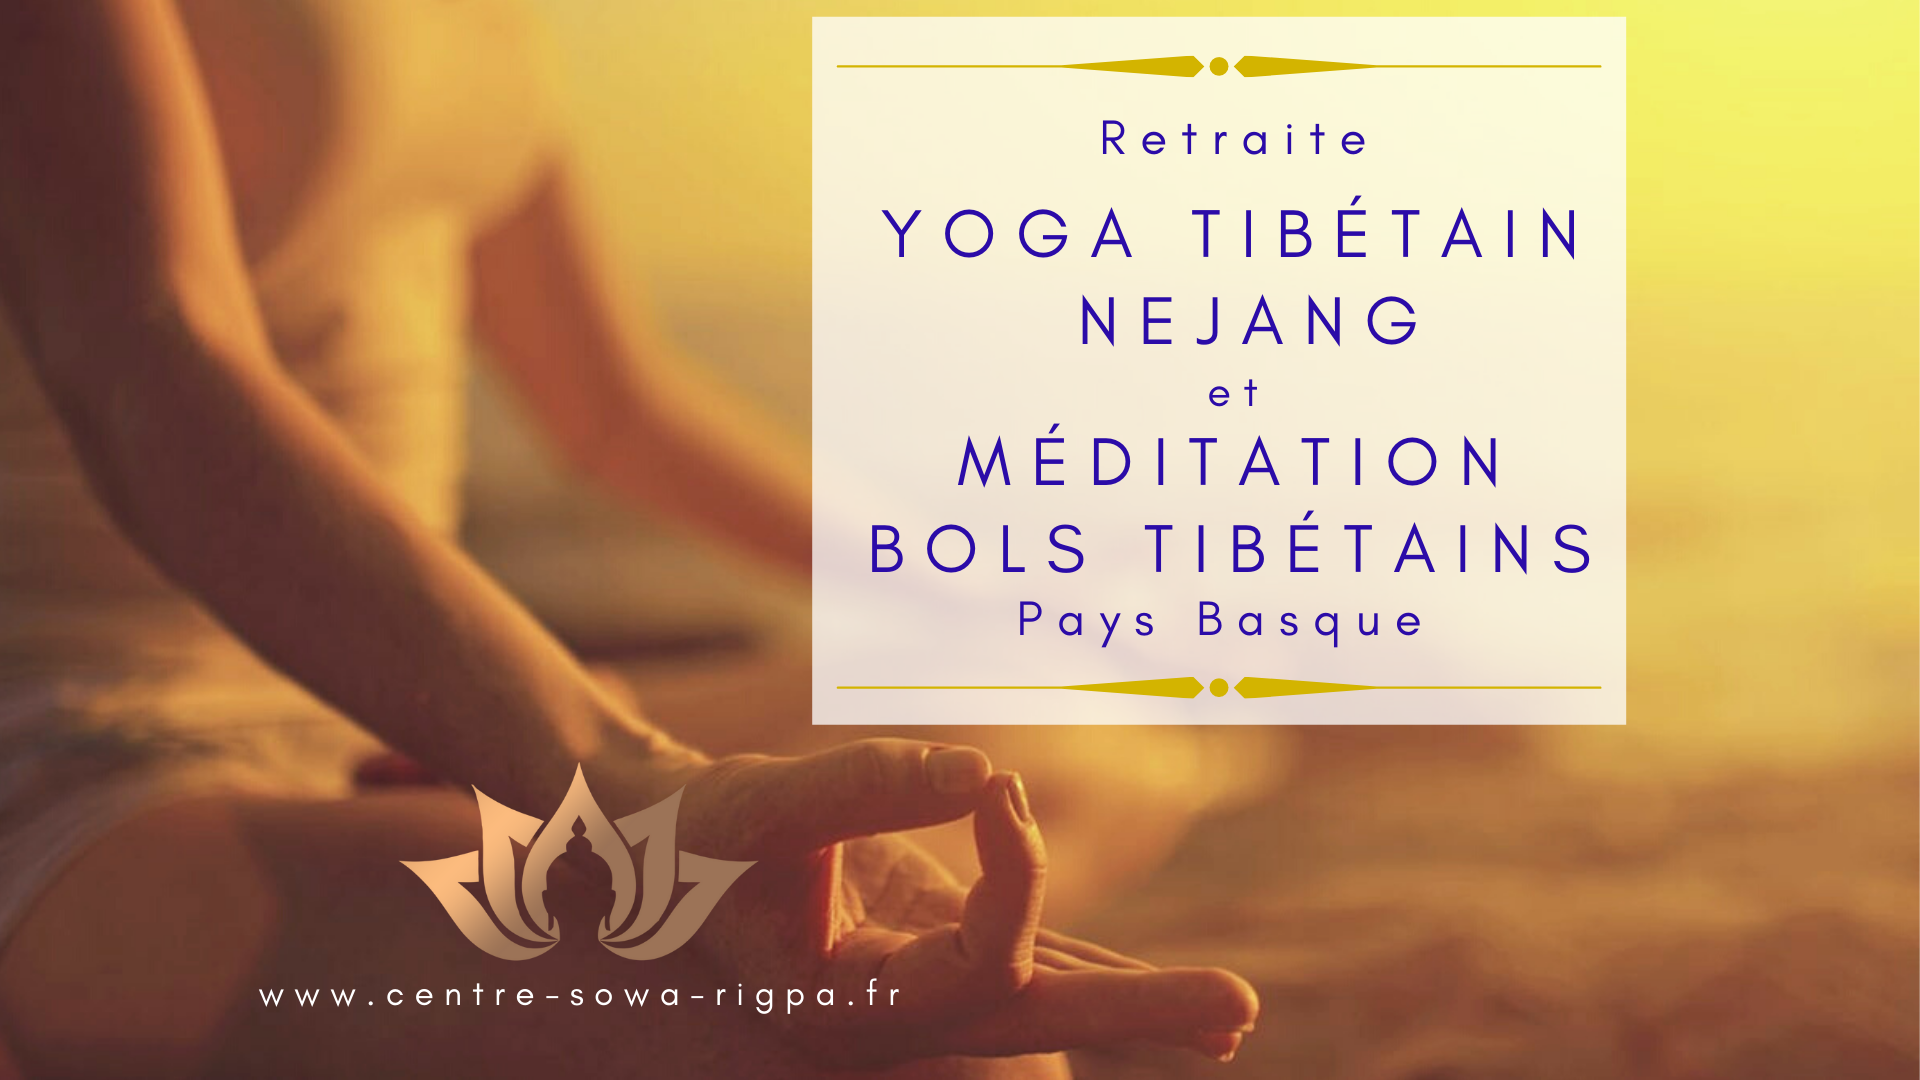 Lire la suite à propos de l’article Retraite Yoga tibétain Nejang et Méditation avec les bols tibétains